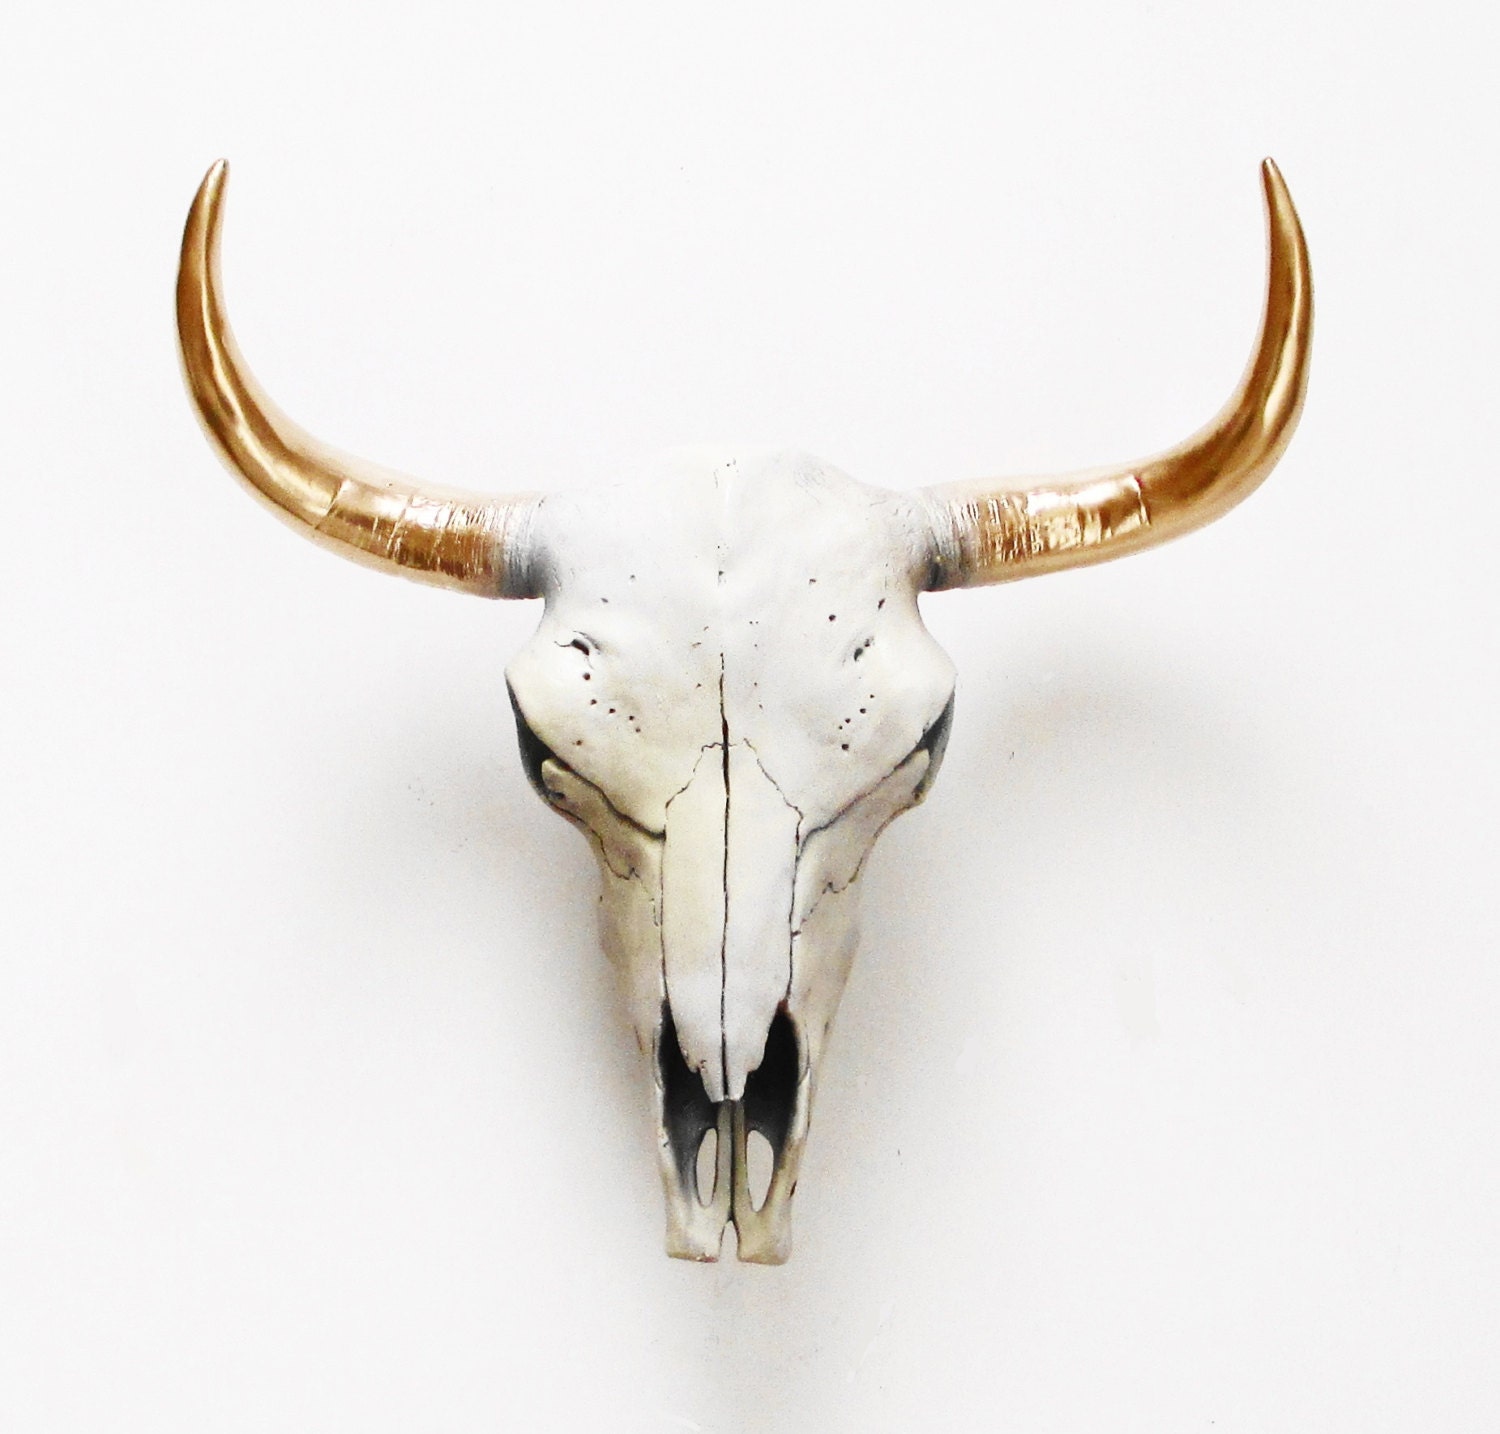 Cow Skull El Toro Cow Skull Bison Skull Animal Skull focus for Skull Home Decor Australia